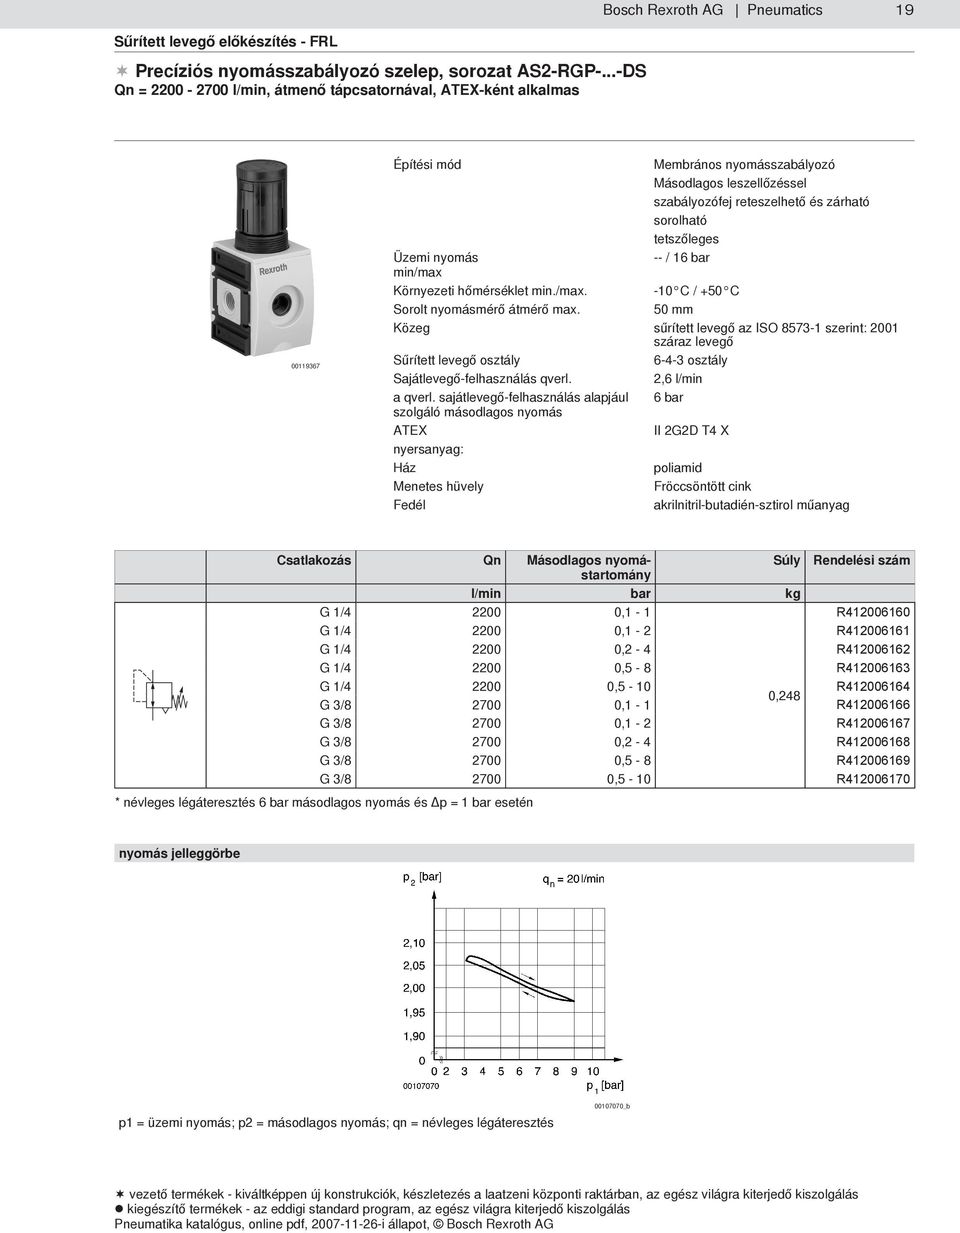 Membrános nyomásszabályozó Másodlagos leszellőzéssel szabályozófej reteszelhető és zárható sorolható tetszőleges -- / 16 bar -10 C / +50 C 50 mm Közeg sűrített levegő az ISO 8573-1 szerint: 2001